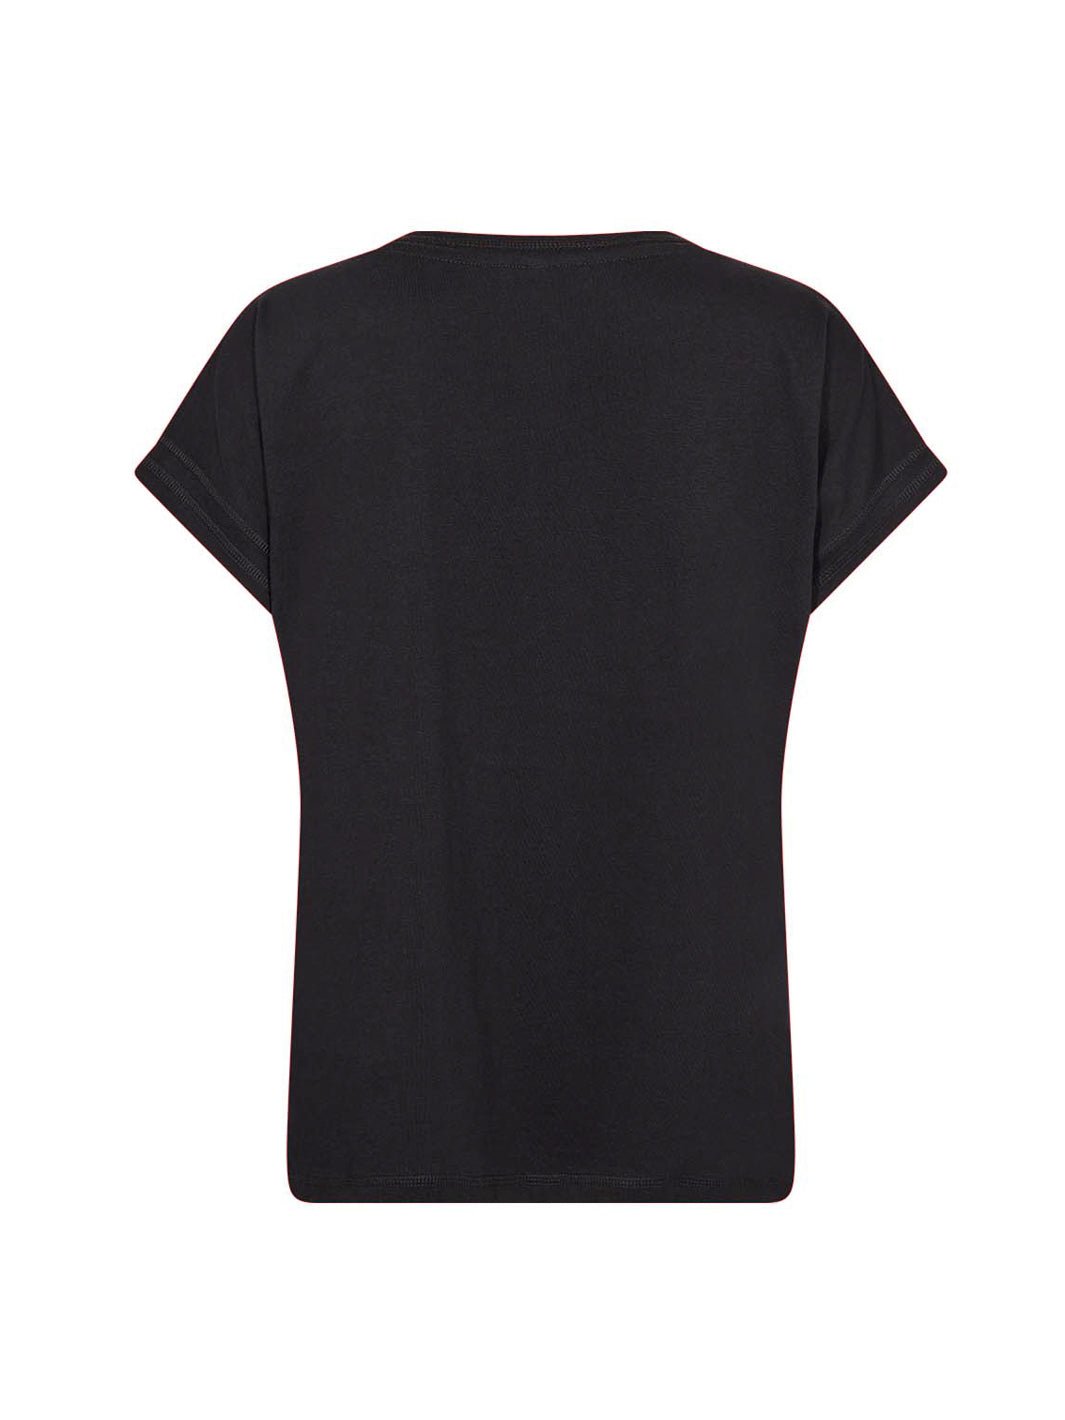 Soya Concept Derby 34 t-shirt black - Online-Mode